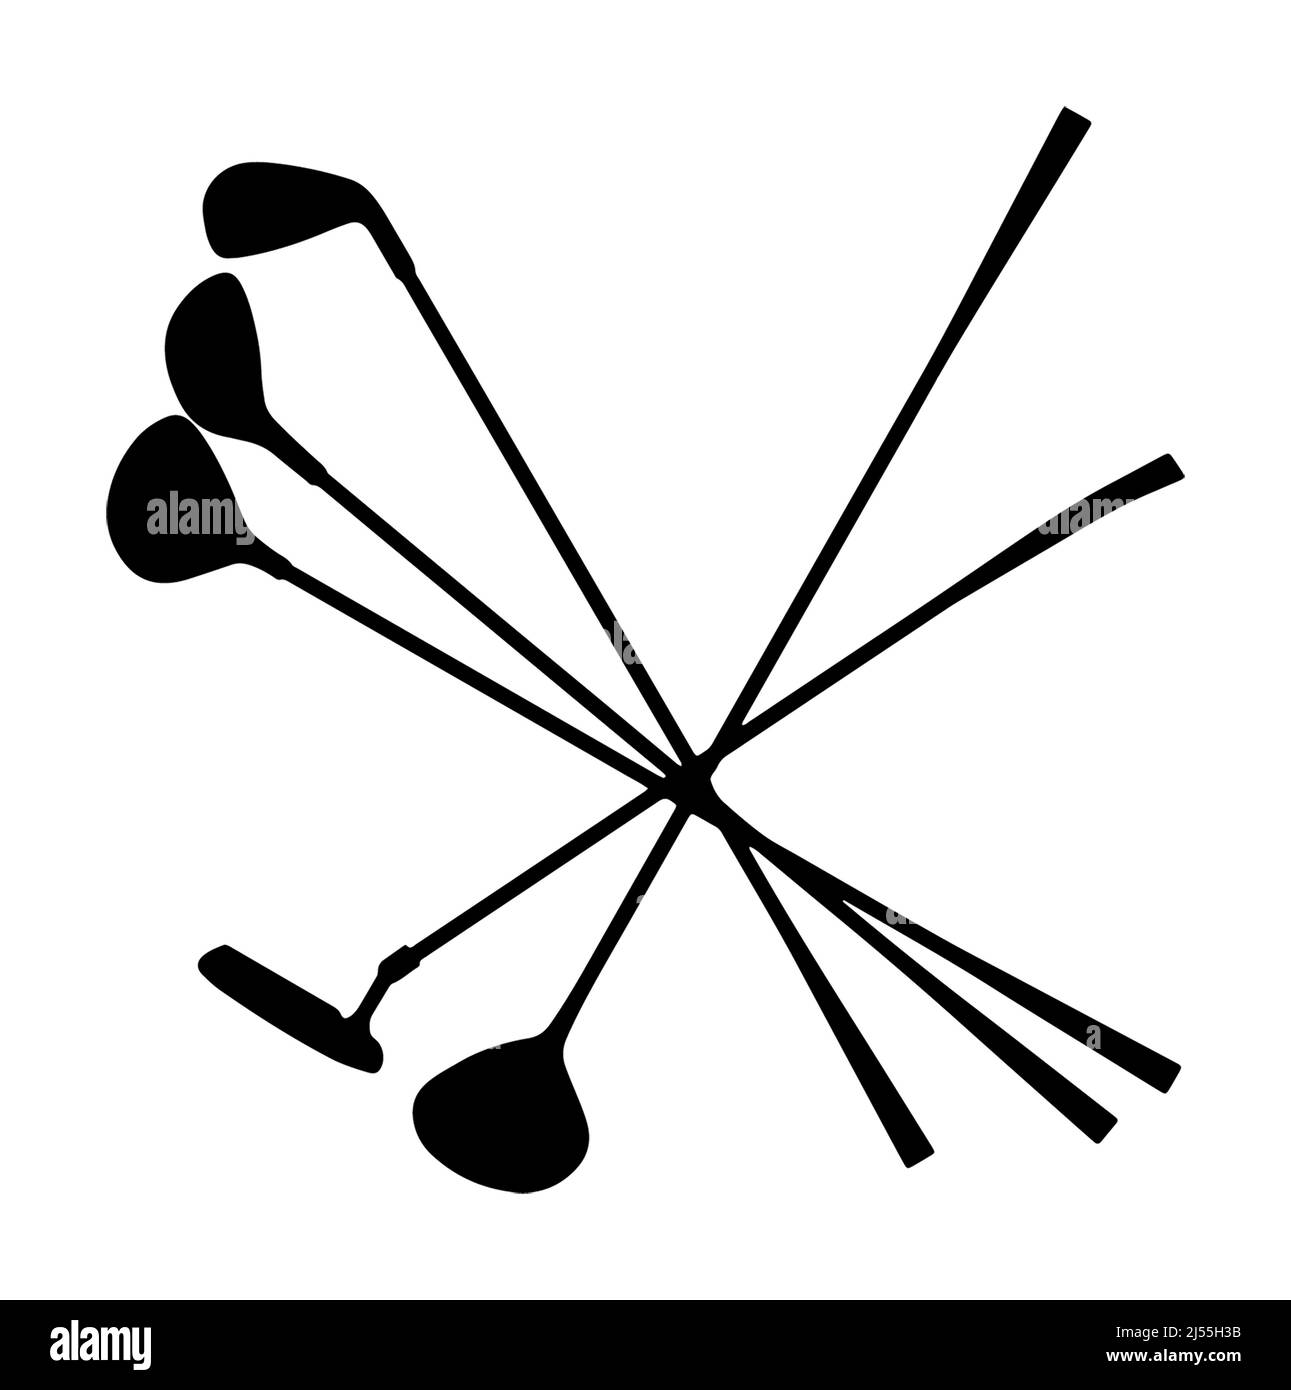 Mehrere Golfschläger Silhouette grafische Darstellung von Fahrern, Puttern und andere Golfausrüstung. Stockfoto